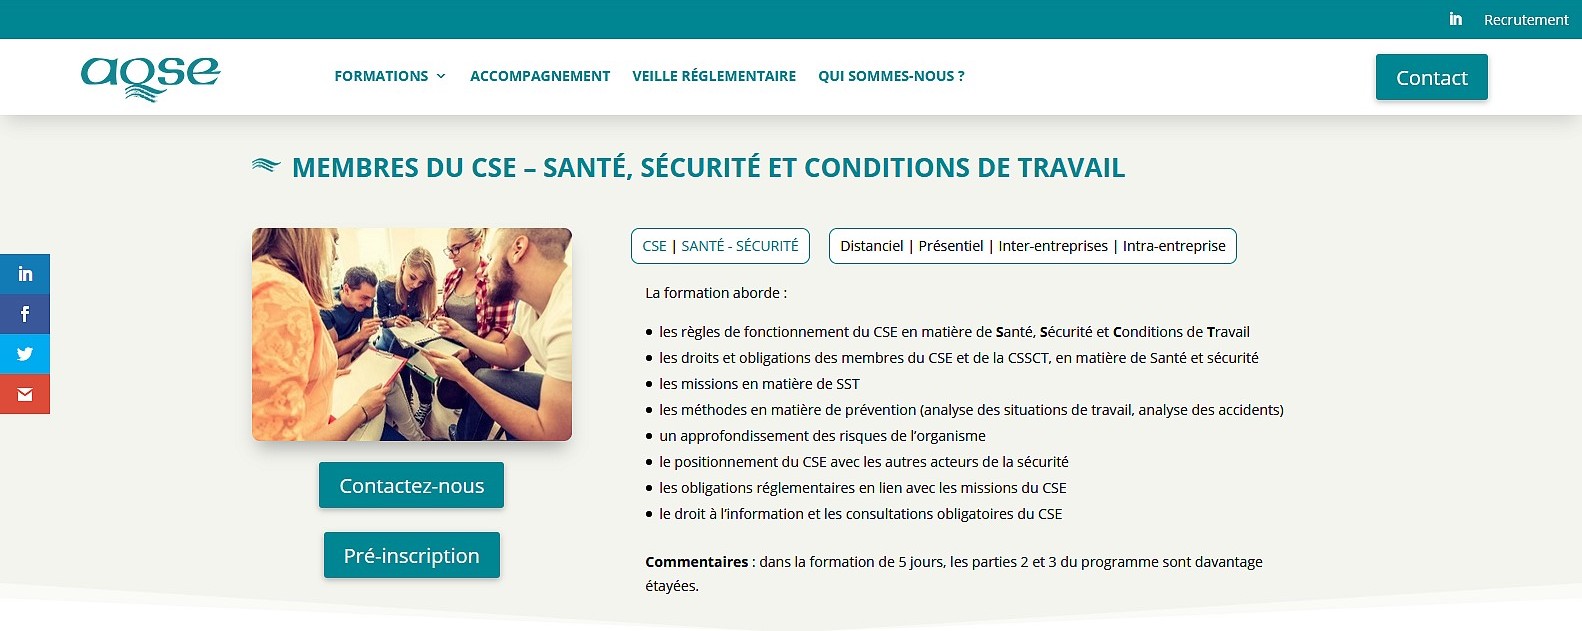 aqse-france.fr page formation prévention de la pénibilité au travail